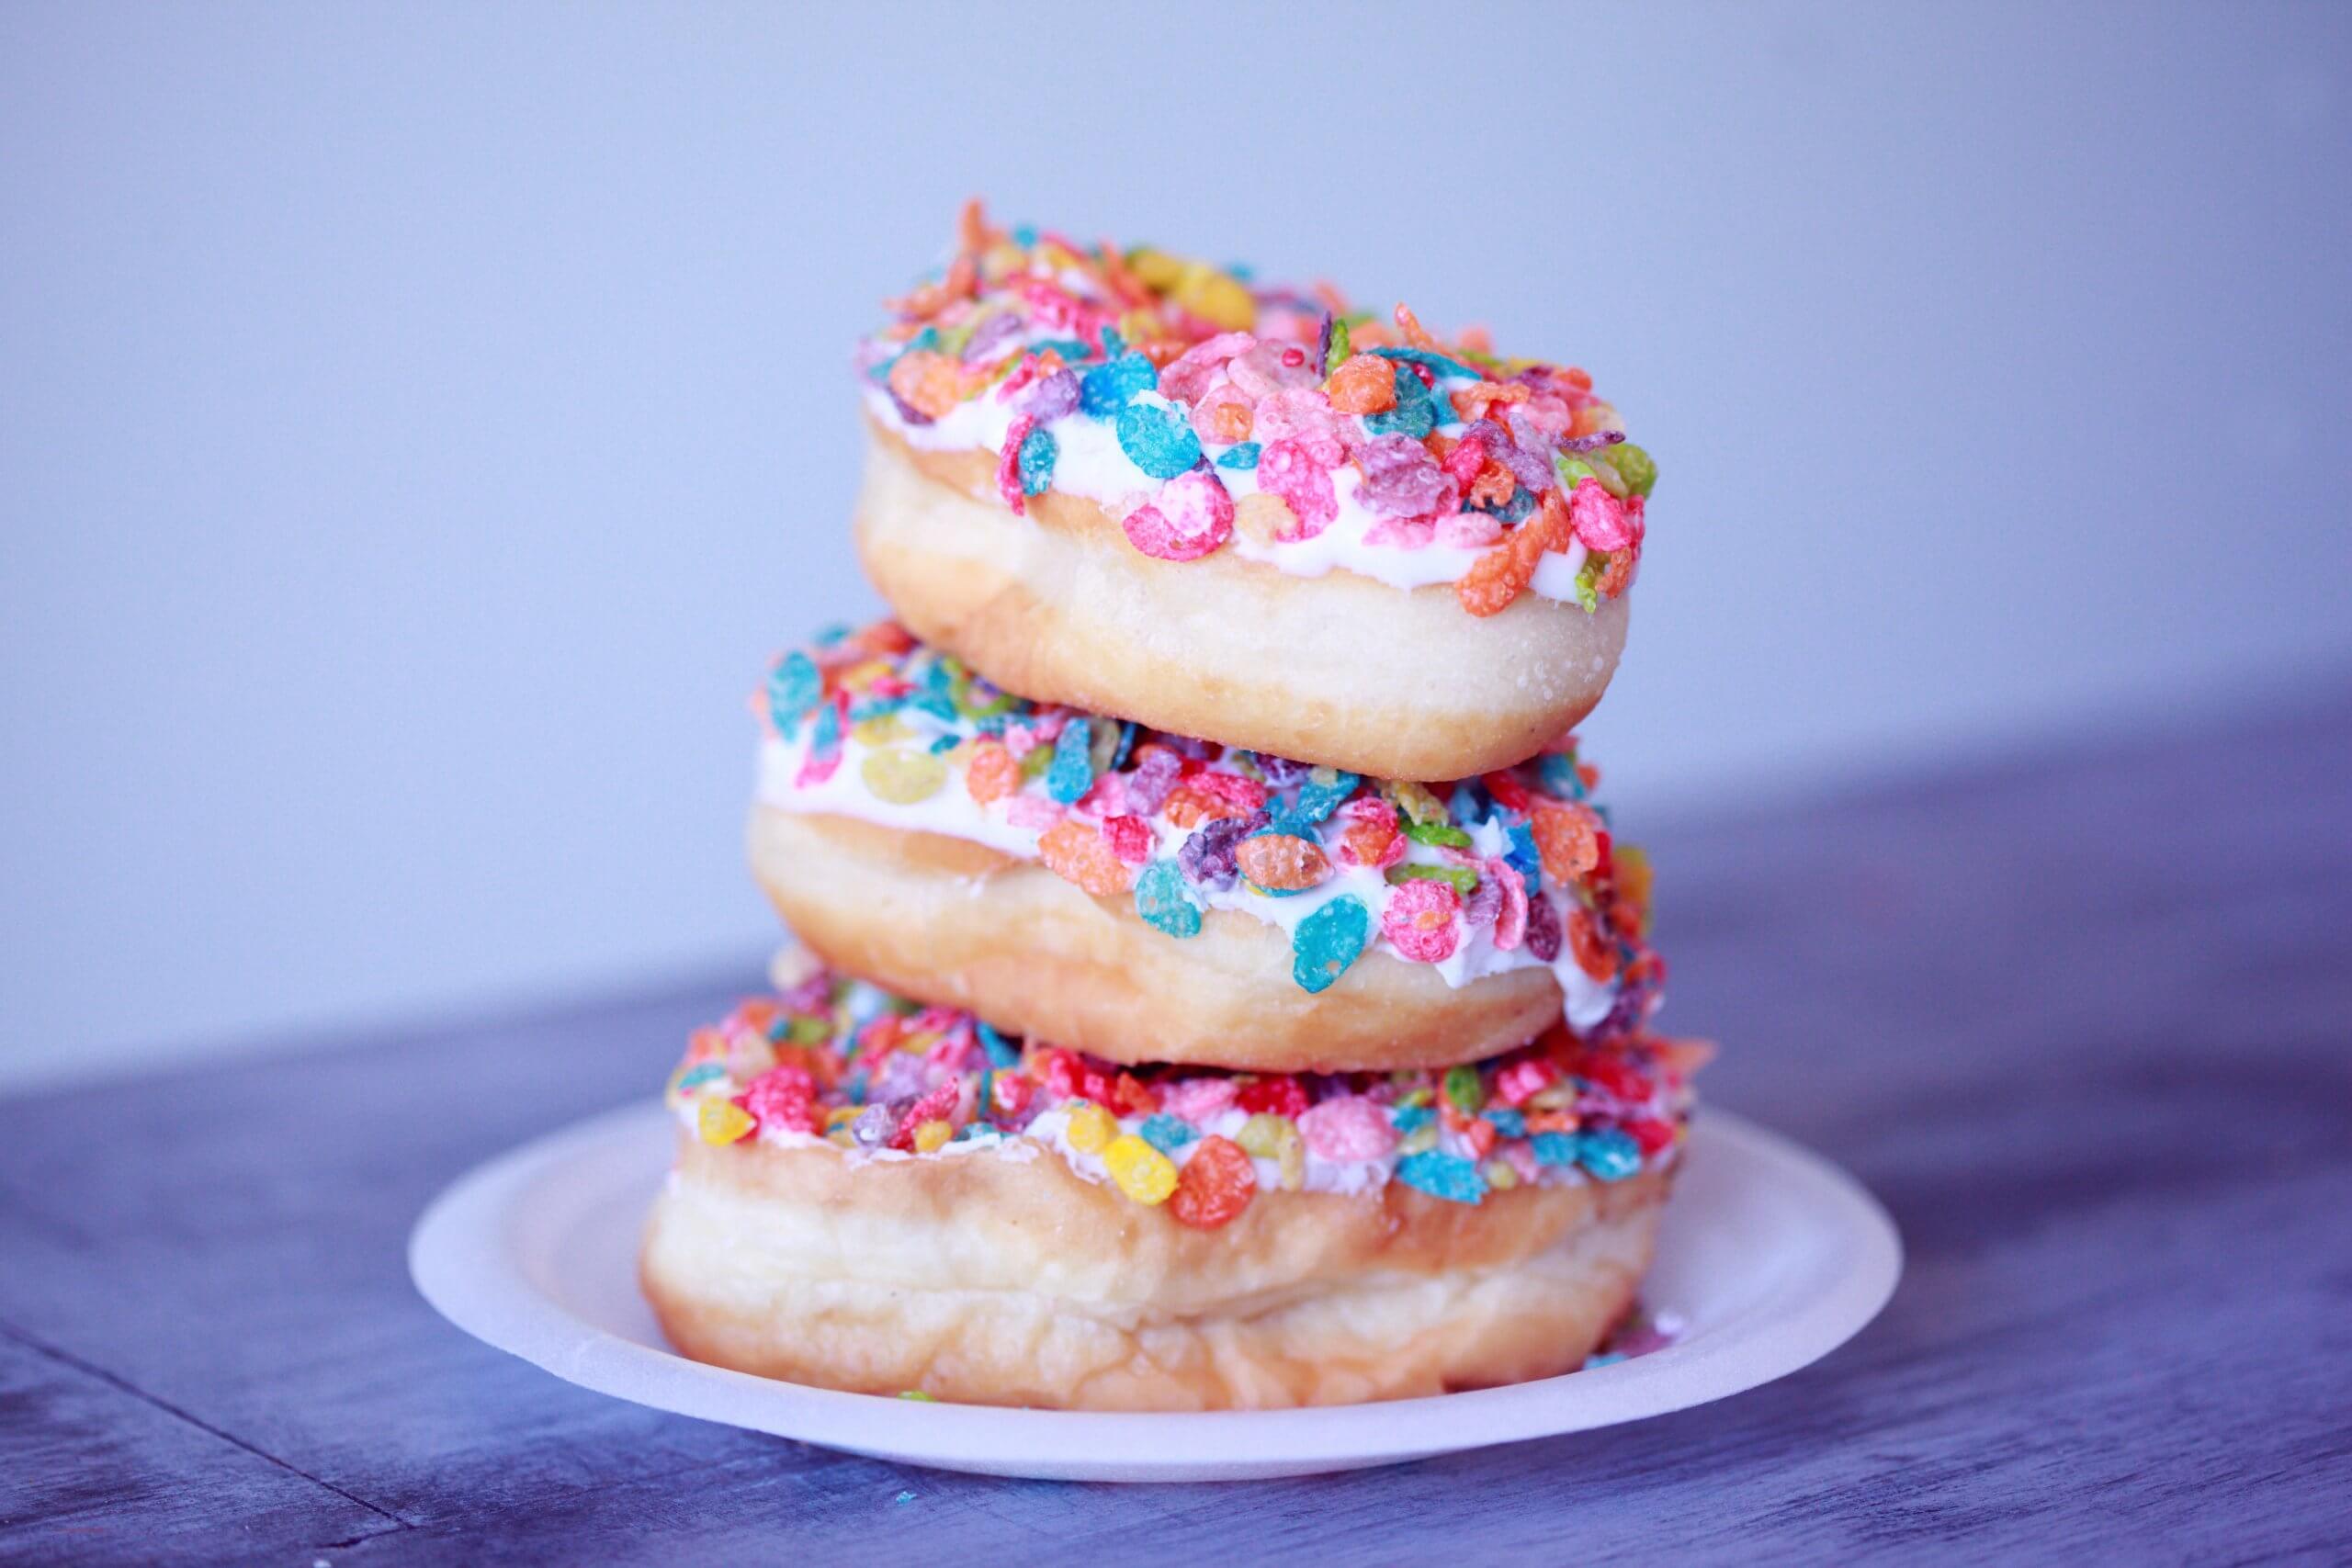 Bunte Donuts sind übereinander gestapelt auf einer lila farbenden Tischdecke